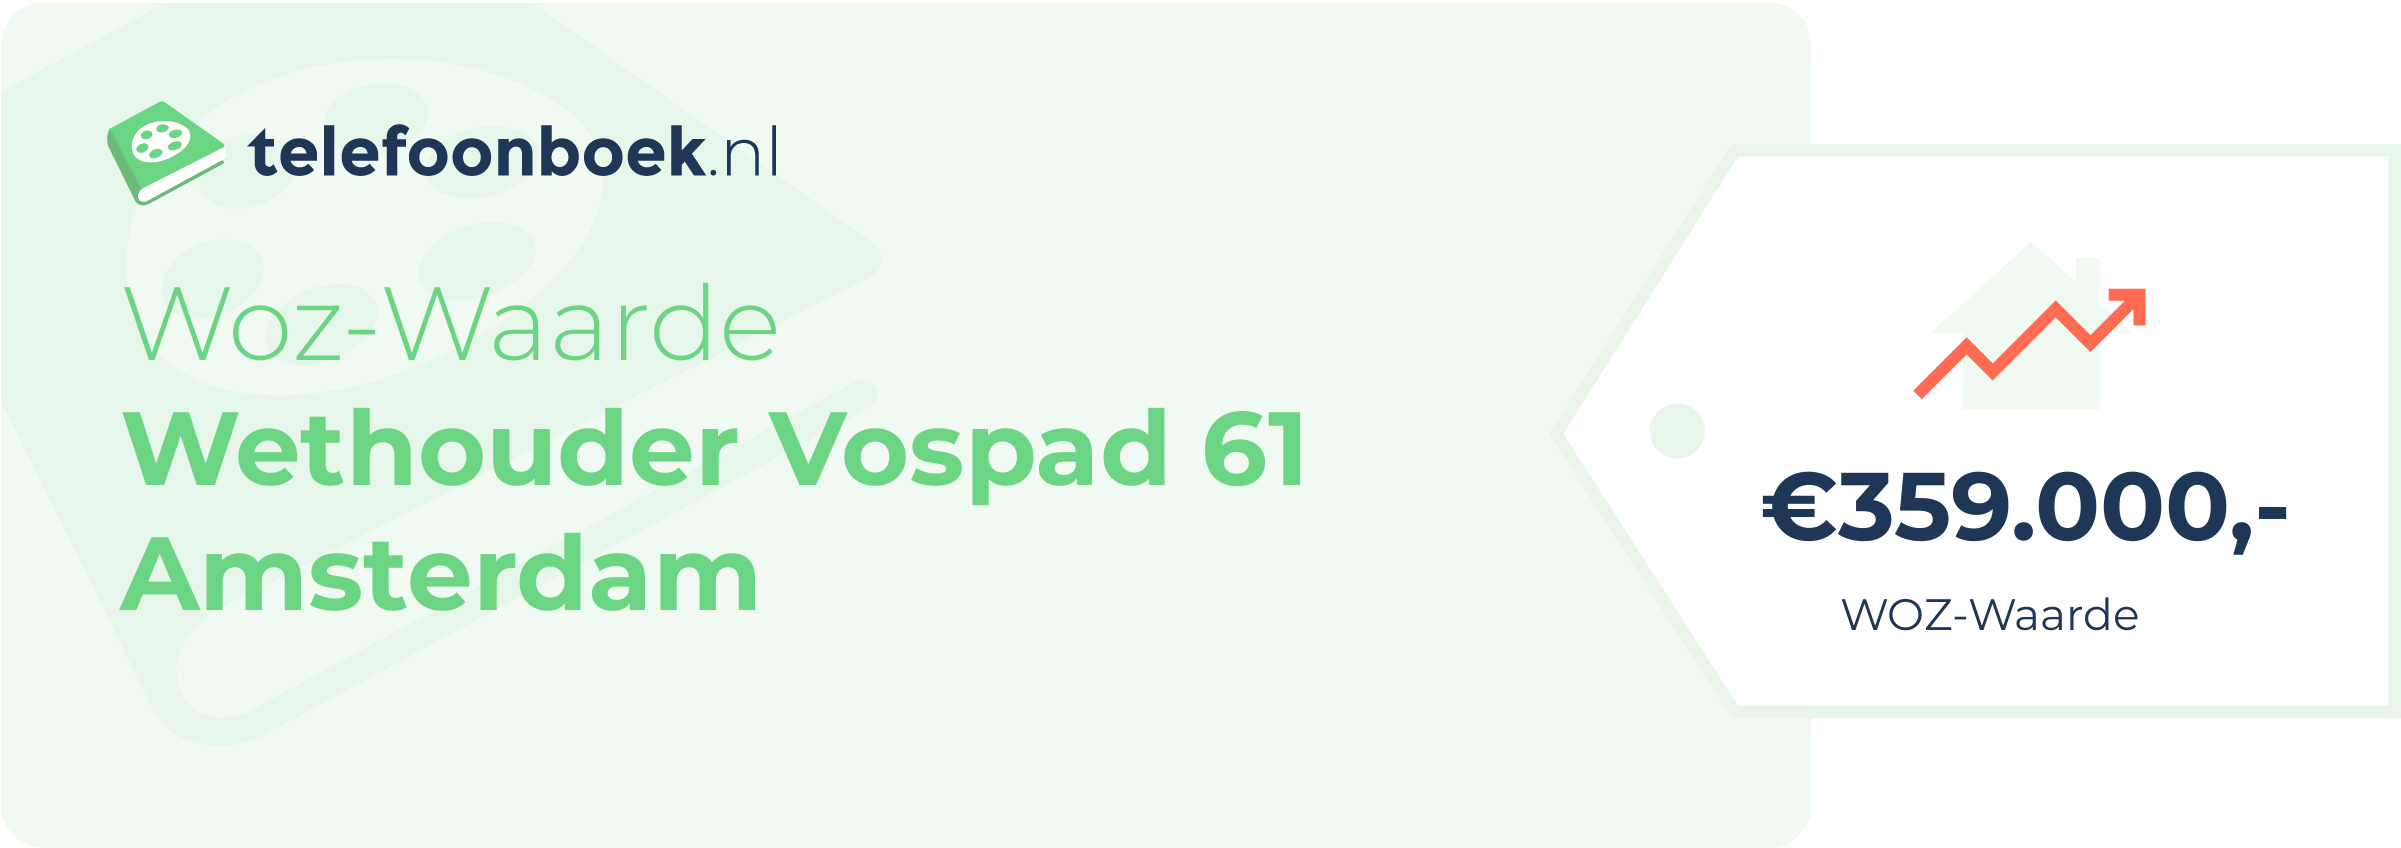 WOZ-waarde Wethouder Vospad 61 Amsterdam